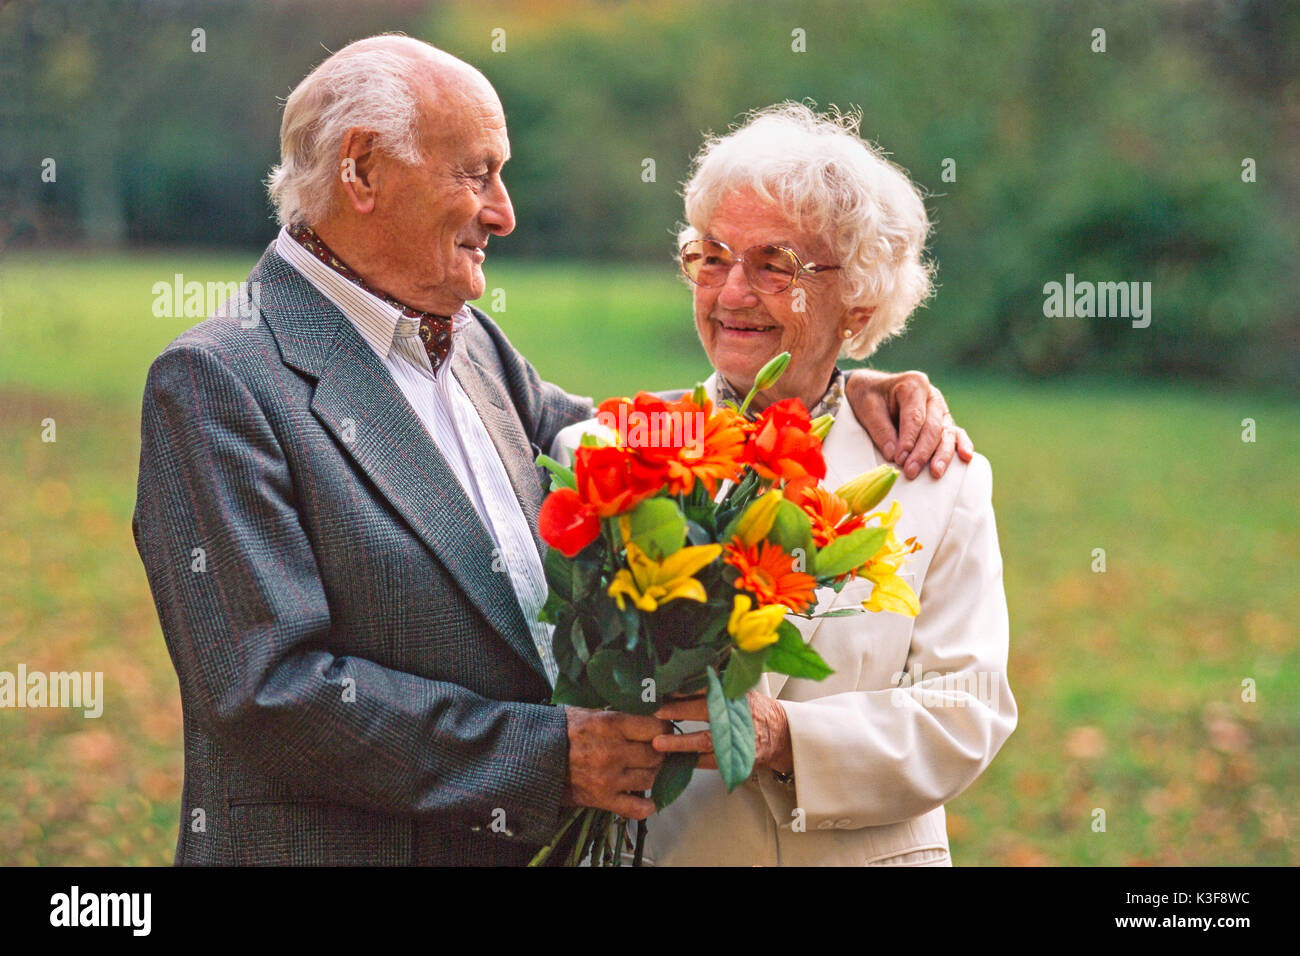 Senior Citizen's giovane con bouquet, l'uomo ha messo il suo braccio intorno a la donna e la guarda Foto Stock